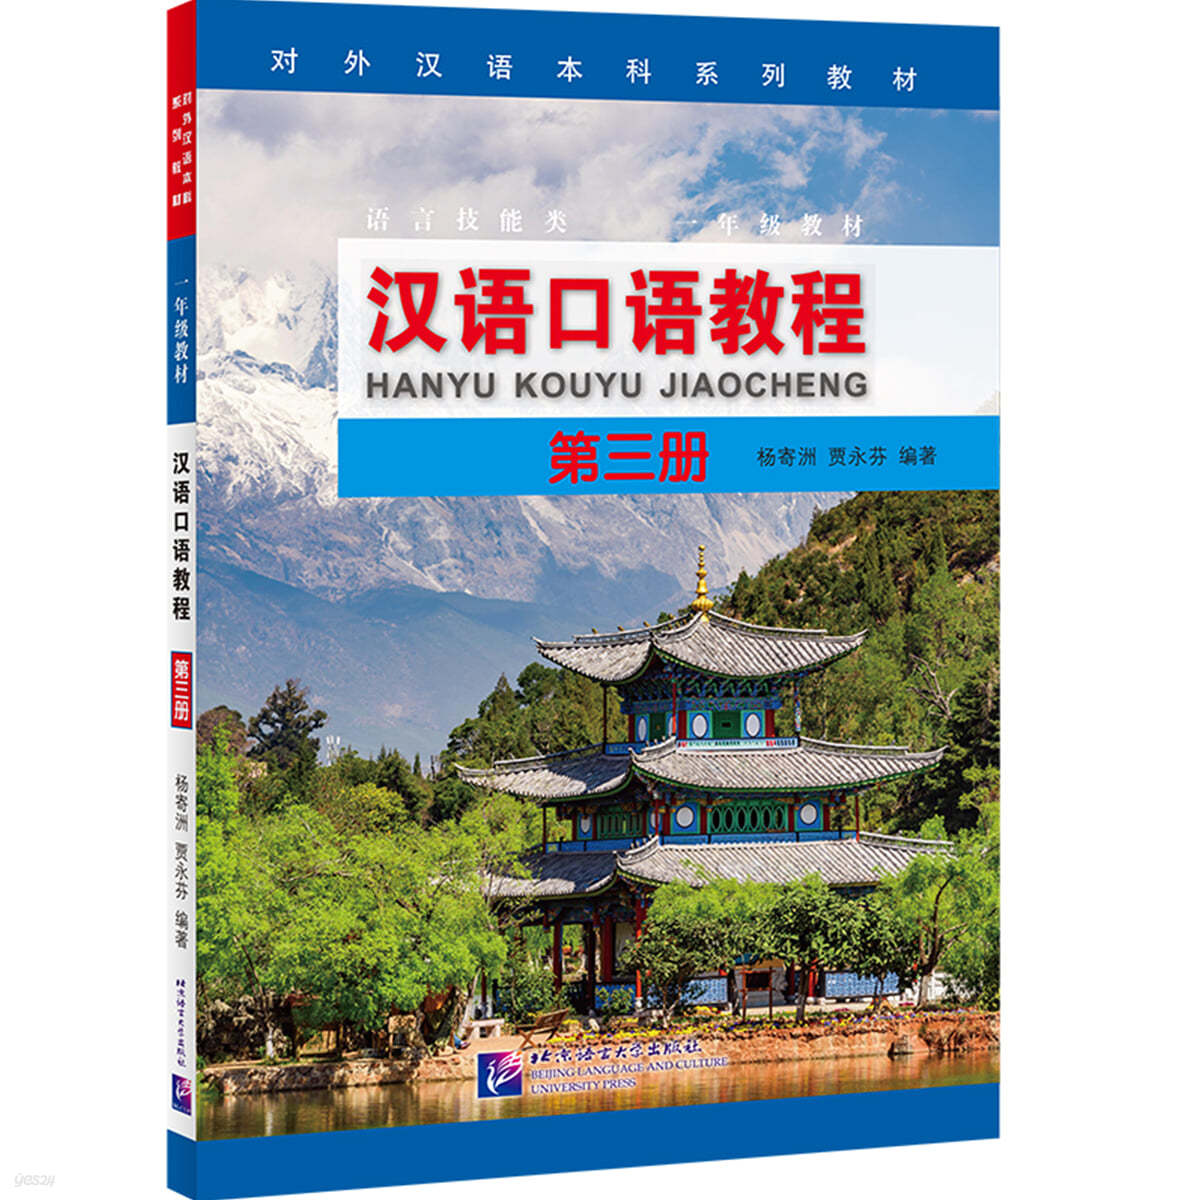 한어구어교정 (제3책) 漢語口語?程（第3冊）